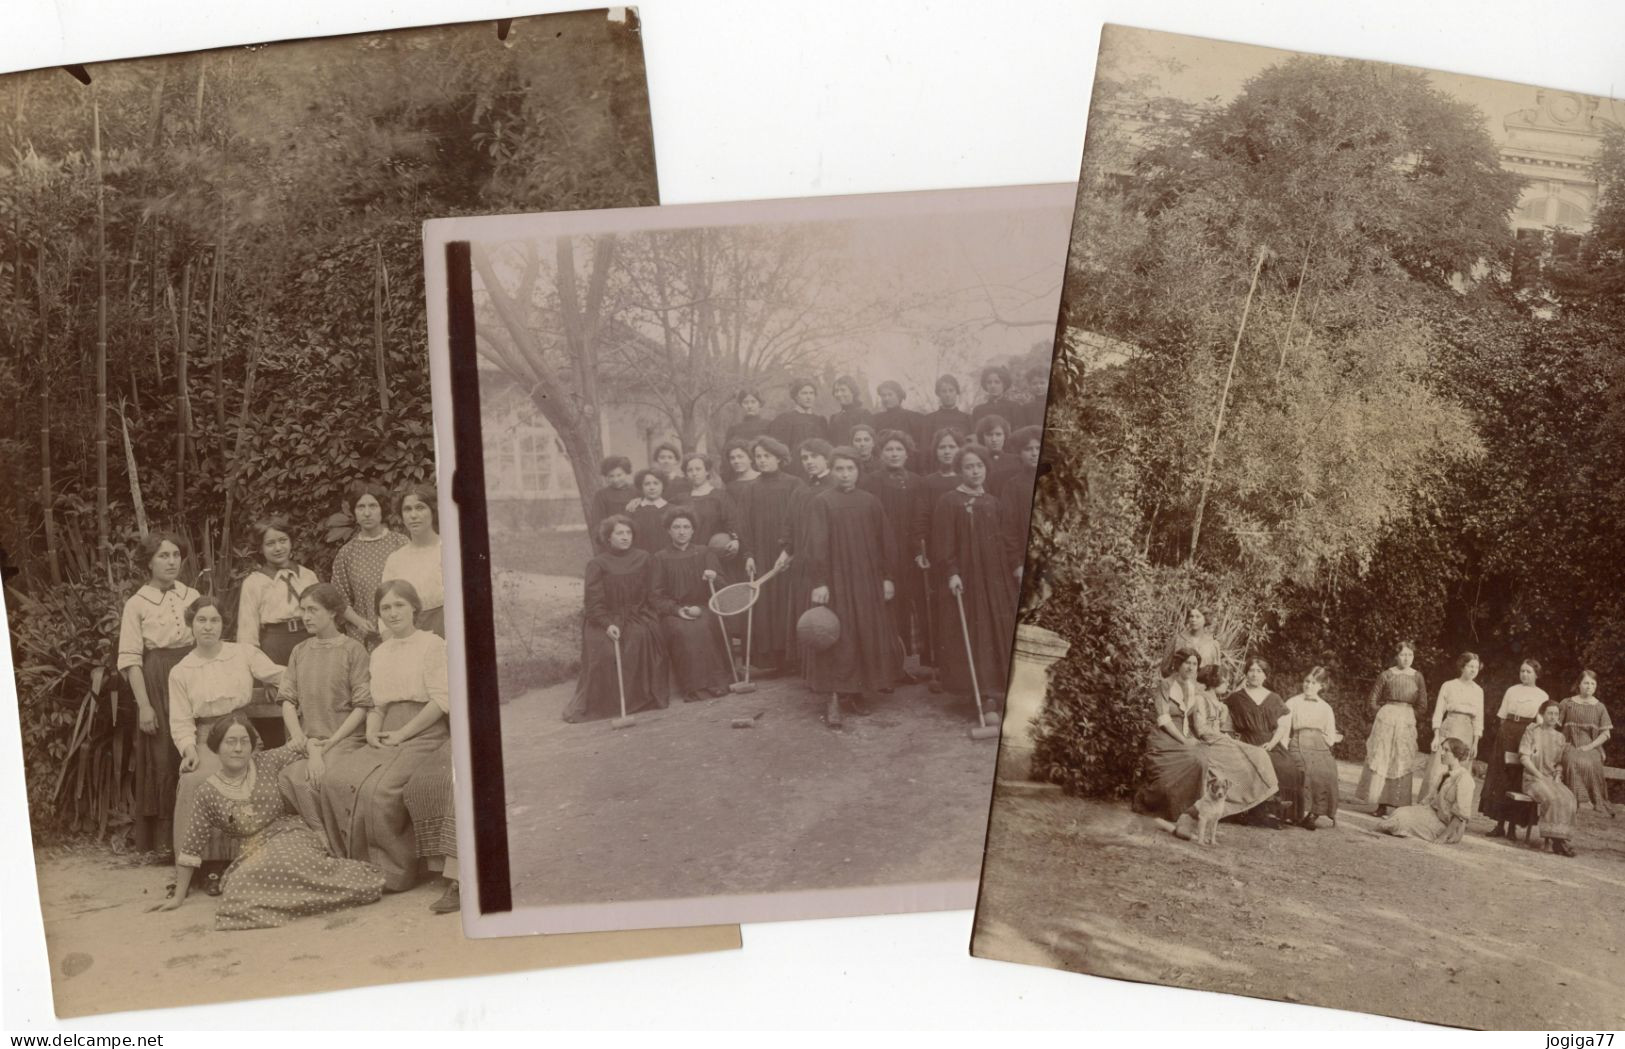 Ecole Normale D'institutrices Aix-en-Provence - Album 1911 - Unclassified